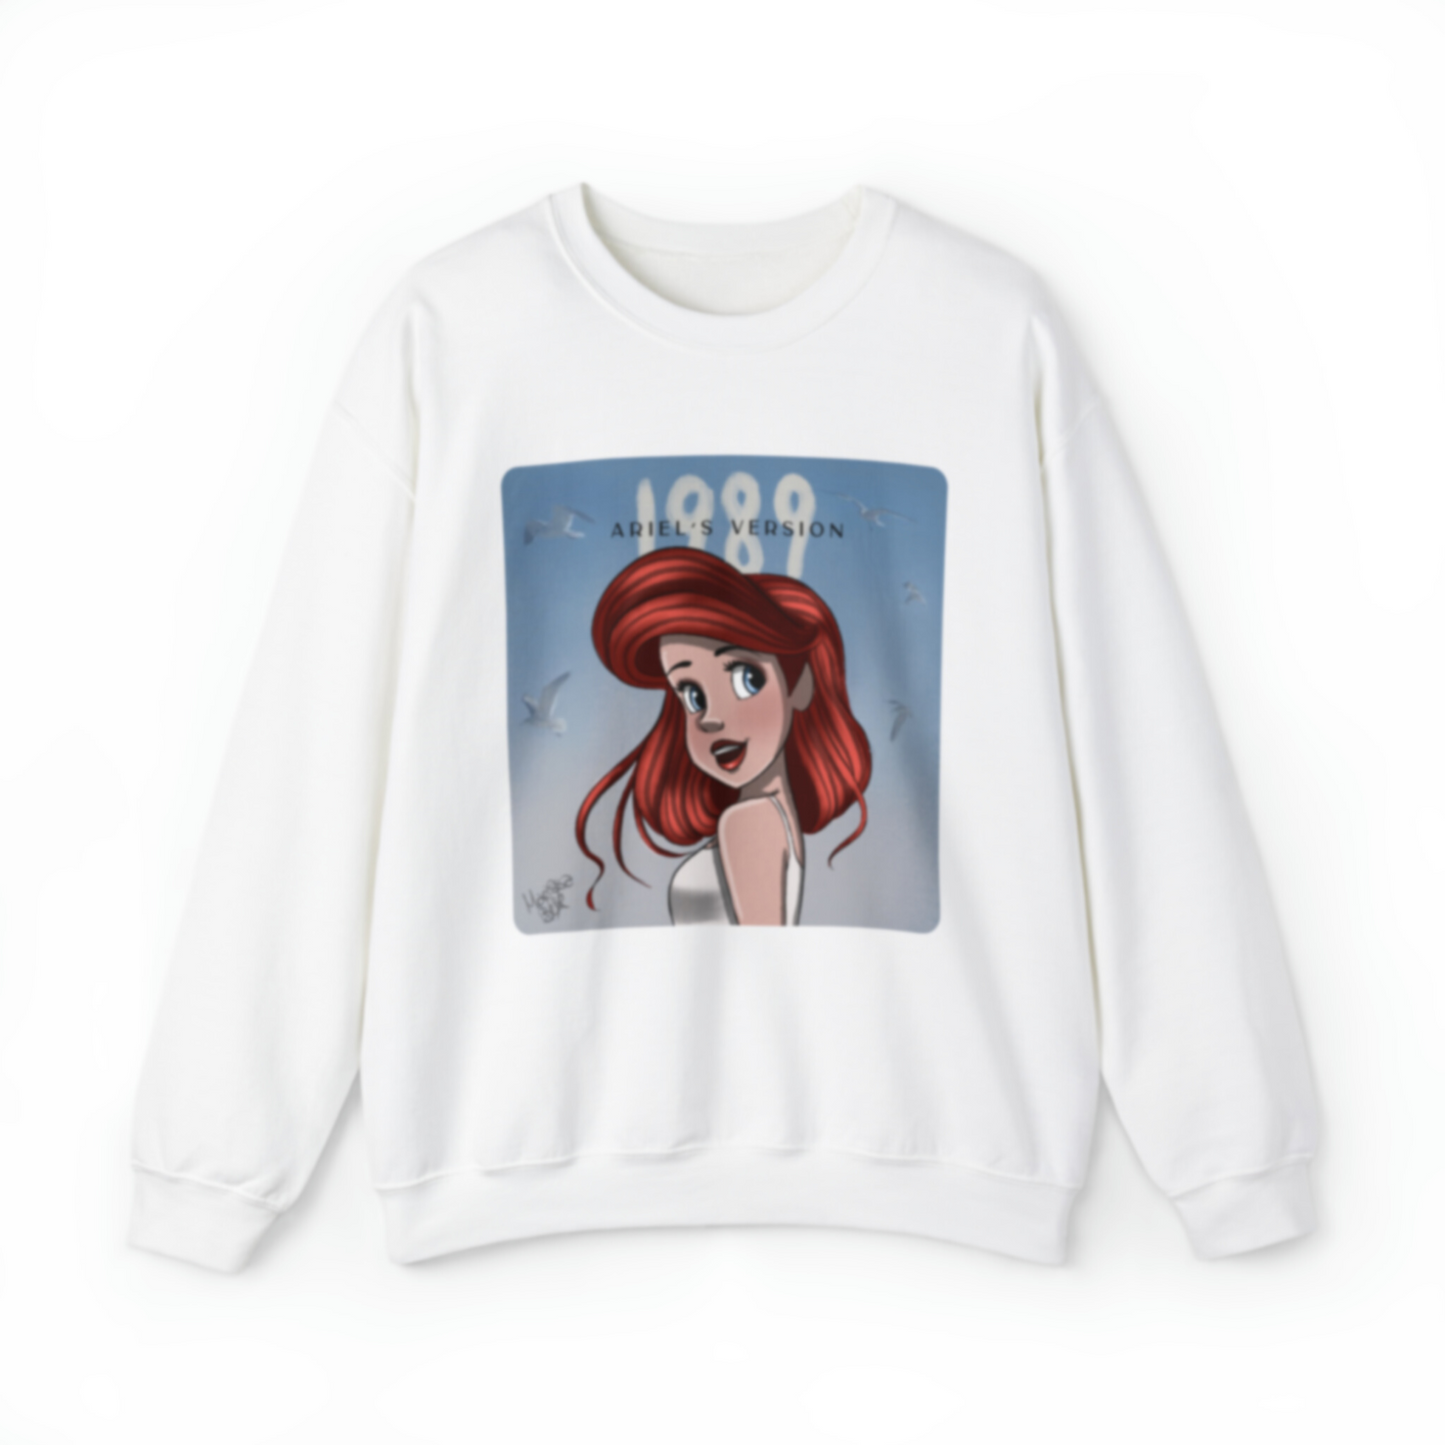 1989 Mermaid Princess Sweatshirt | Adult Gildan Unisex